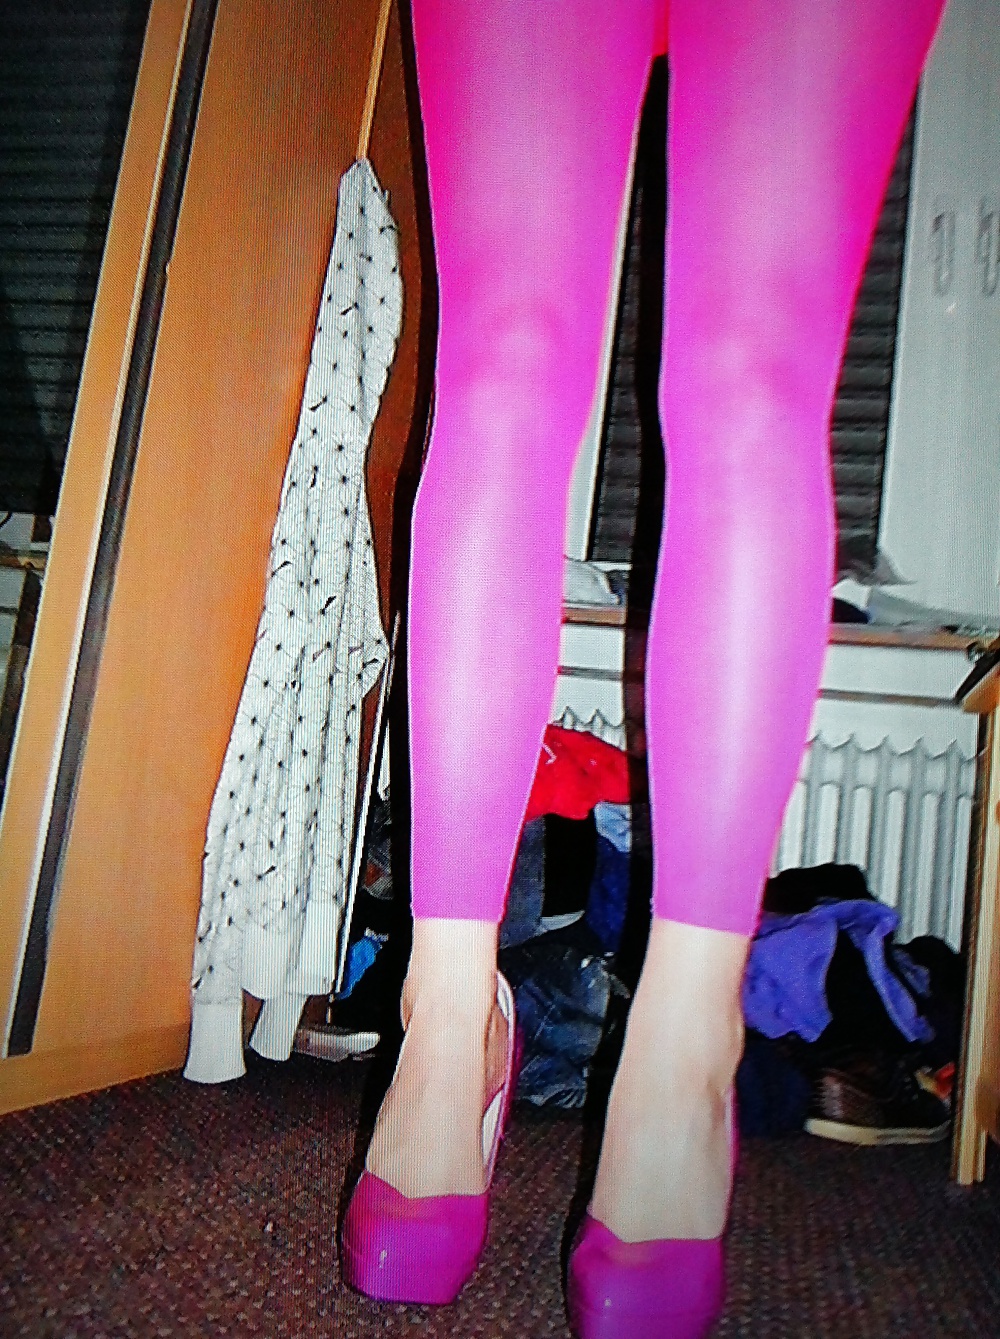 Meine Langen Beine mit Nylon und High Heels adult photos